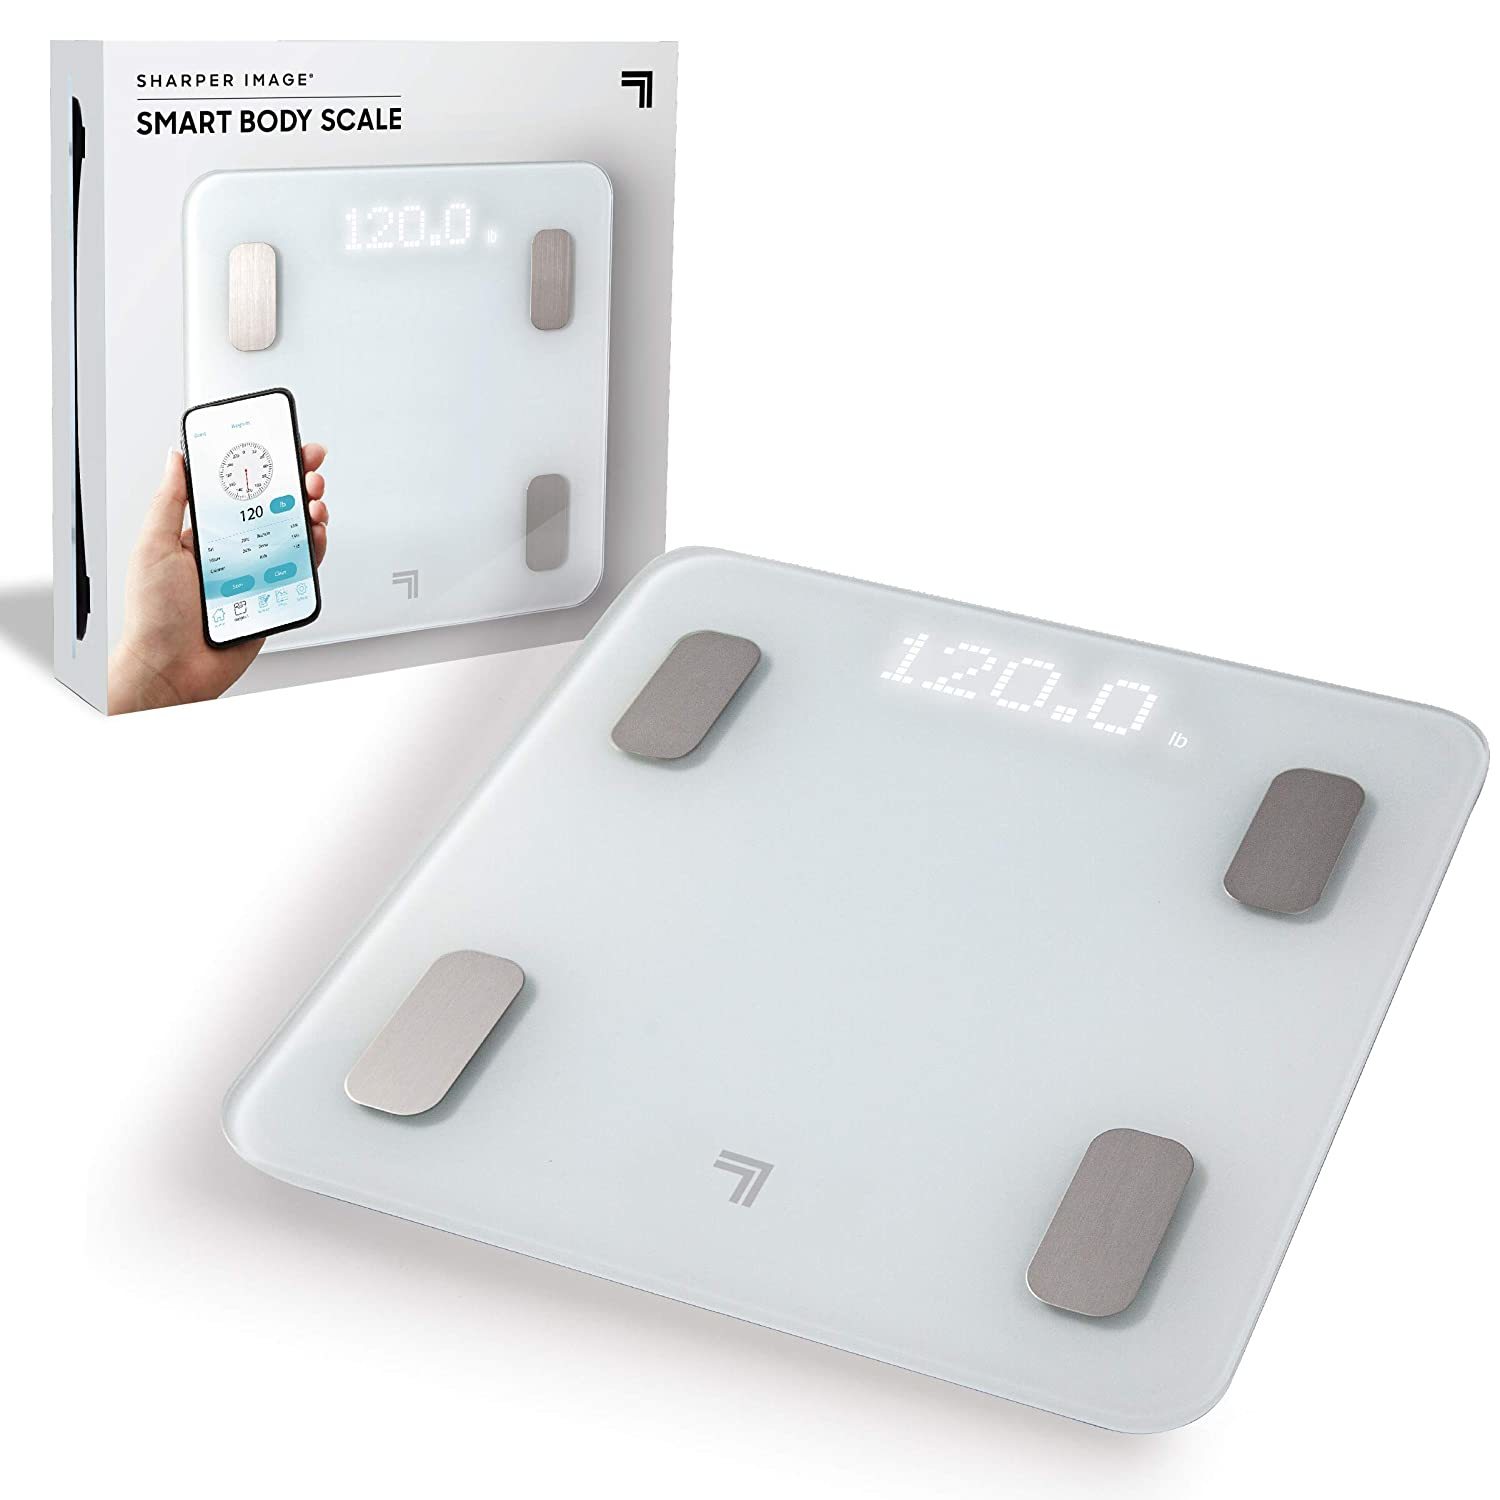 iHealth Nexus Body Fat Scale Smart BMI Scale Digital Bathroom Bluetooth Weight